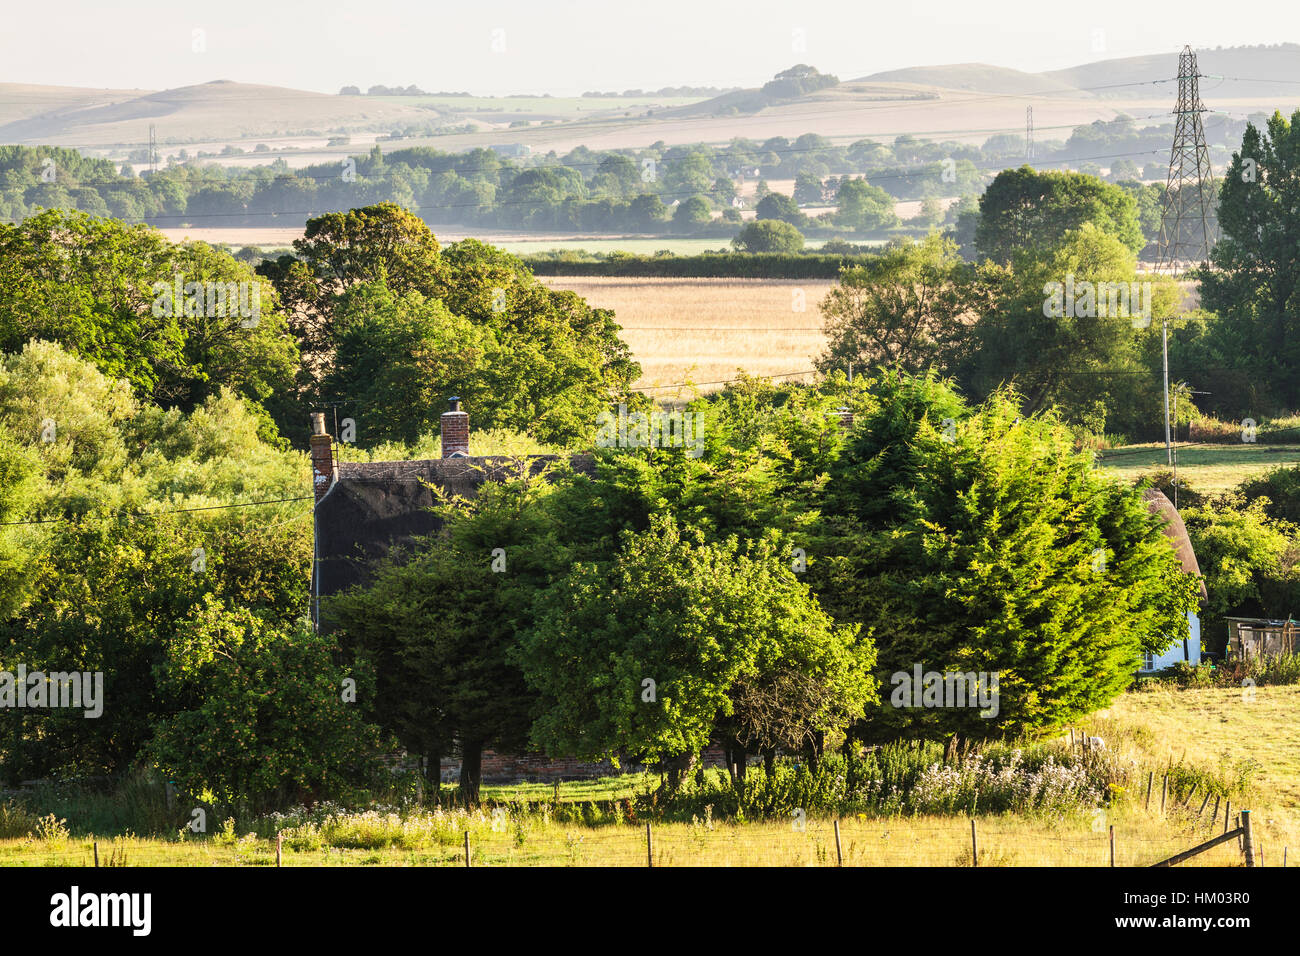 La fin de l'été Anglais typique paysage de collines et de terres agricoles dans le Wiltshire, Royaume-Uni. Banque D'Images